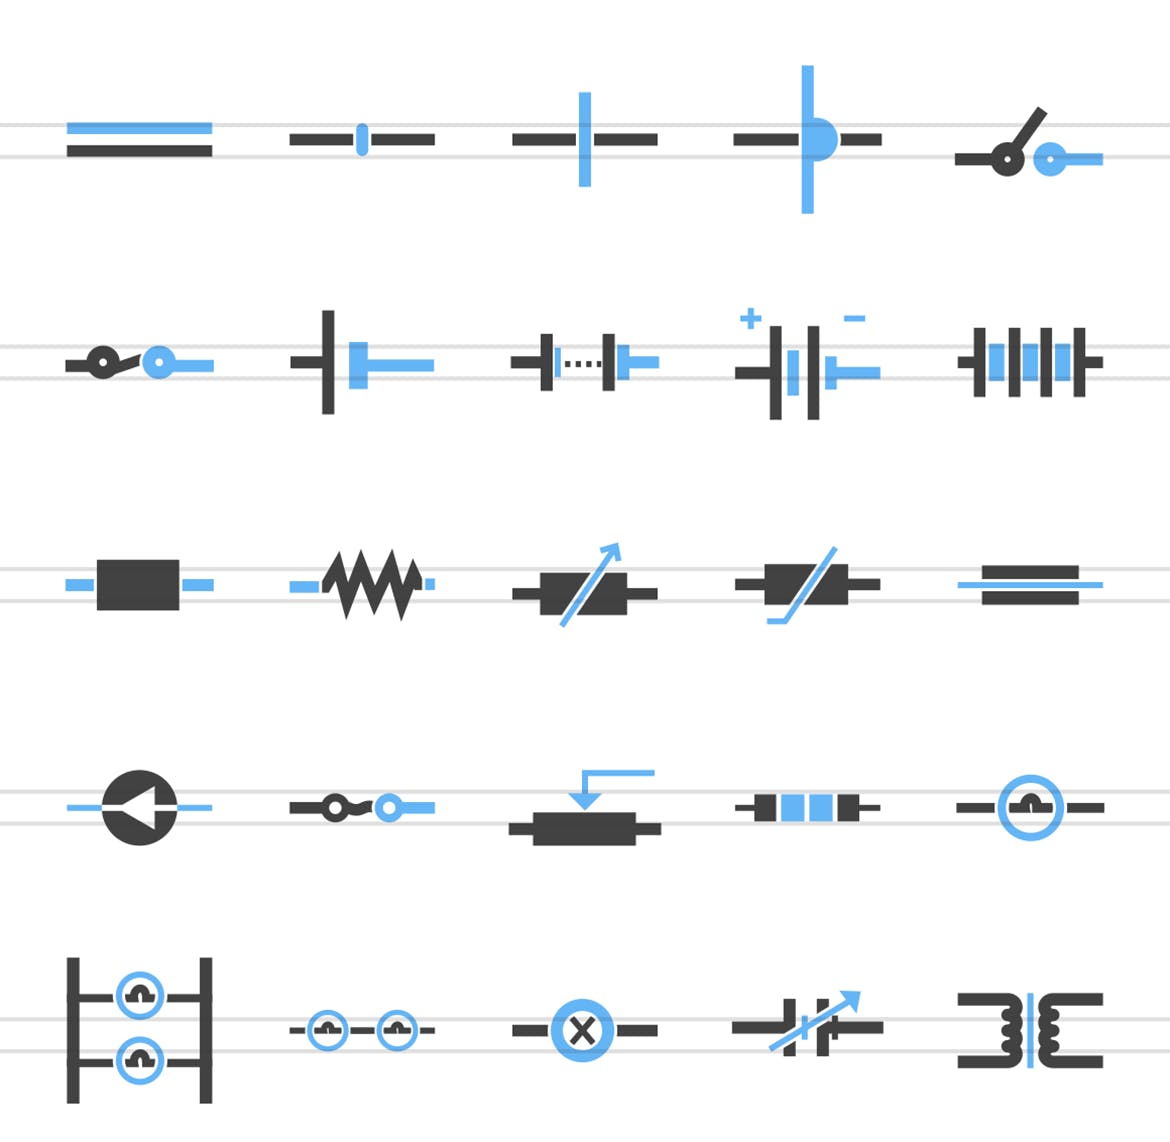 50枚电路线路板主题蓝黑色矢量素材天下精选图标 50 Electric Circuits Blue & Black Icons插图(1)